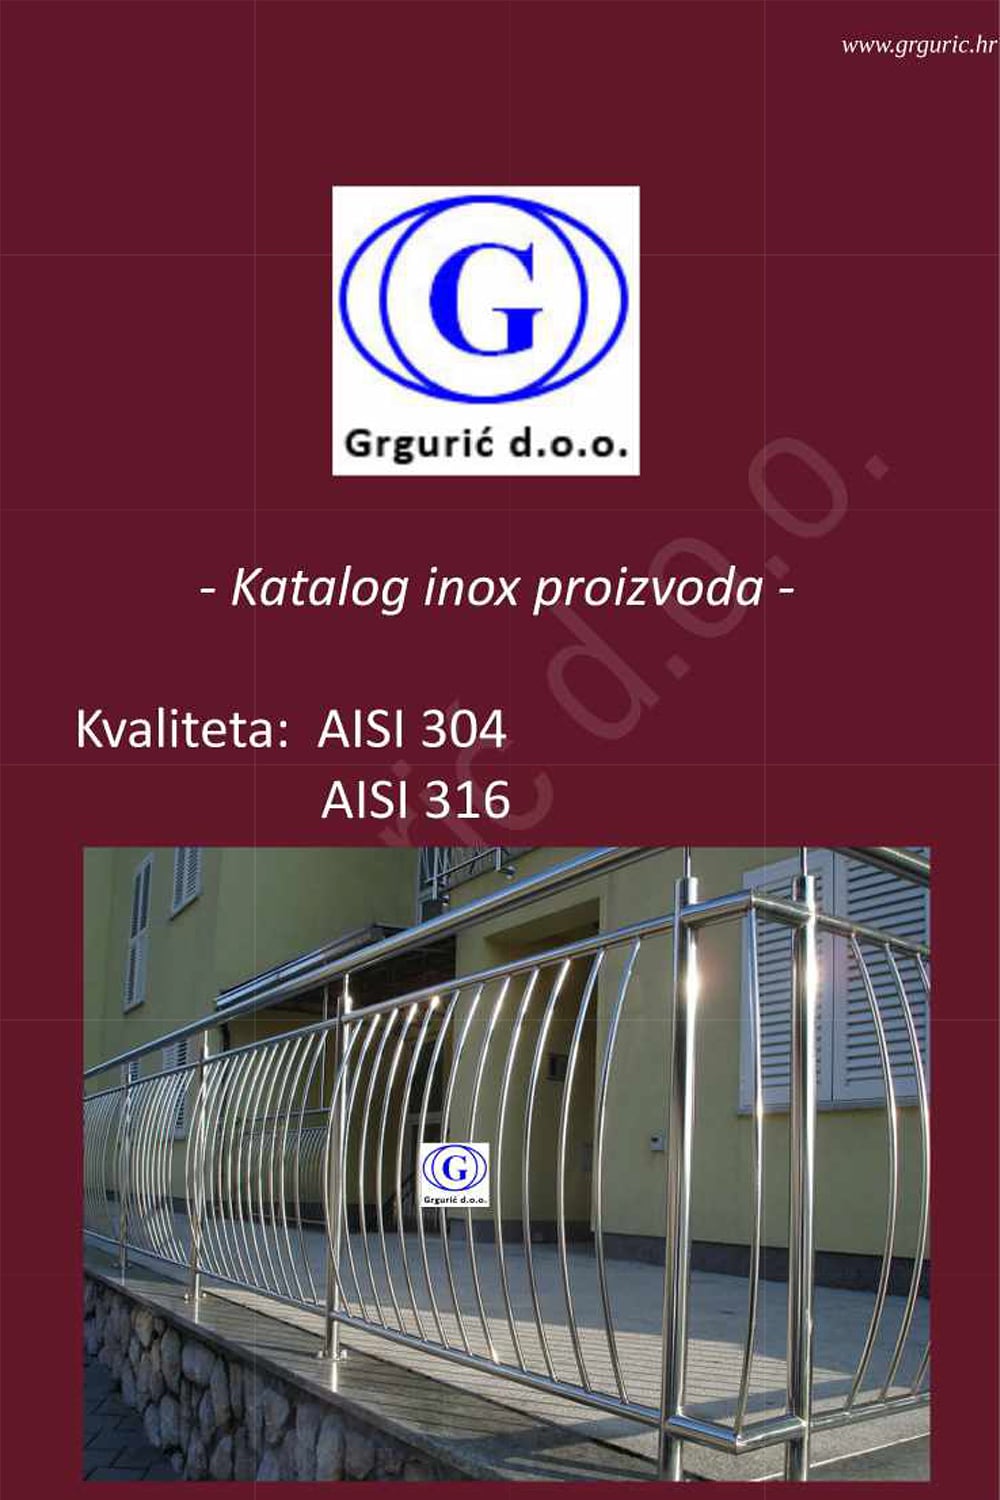 img/katalog-inox/grguric-inox-001.jpg